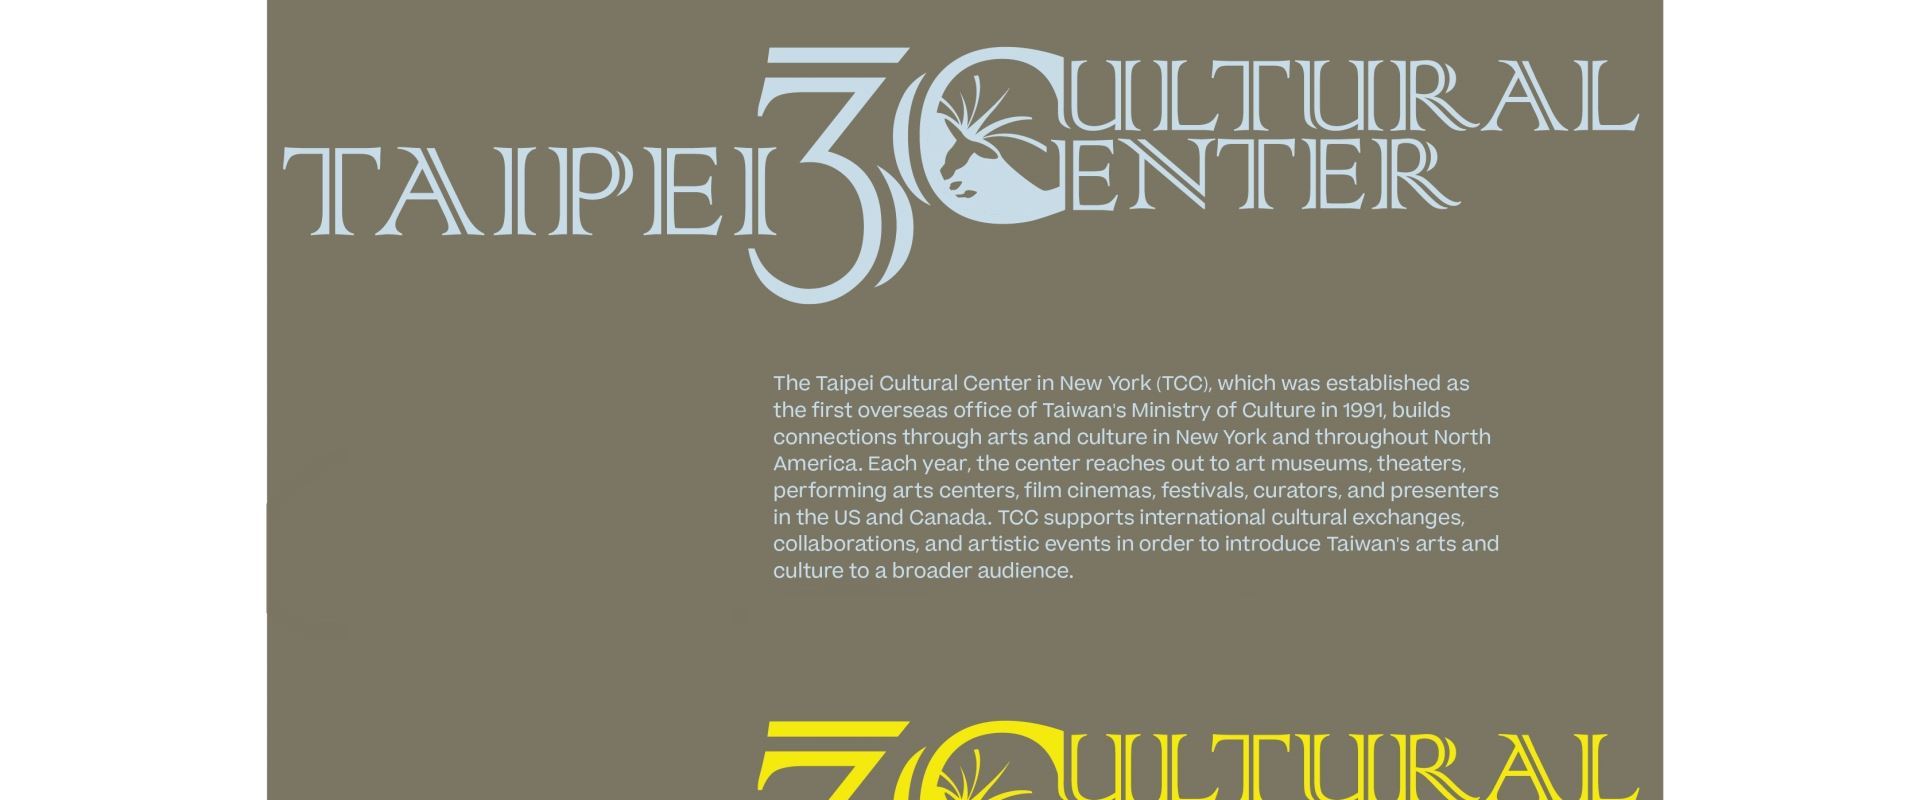 駐紐約台北文化中心成立30週年